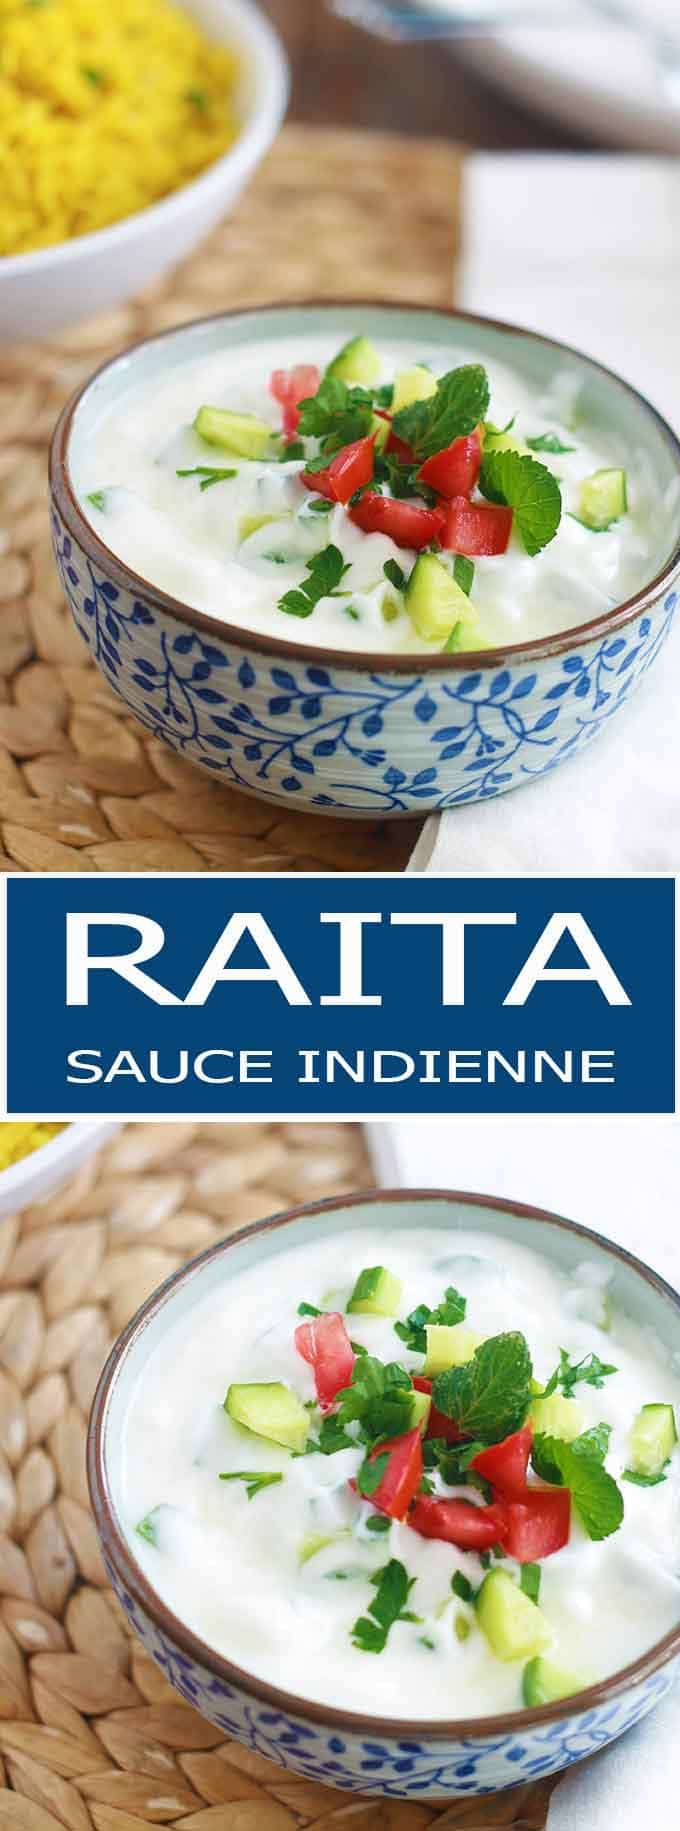 Recette de la sauce raita : une sauce au yaourt rafraîchissante, saine facile. Yaourt, légumes ou fruits, épices et herbes aromatiques.